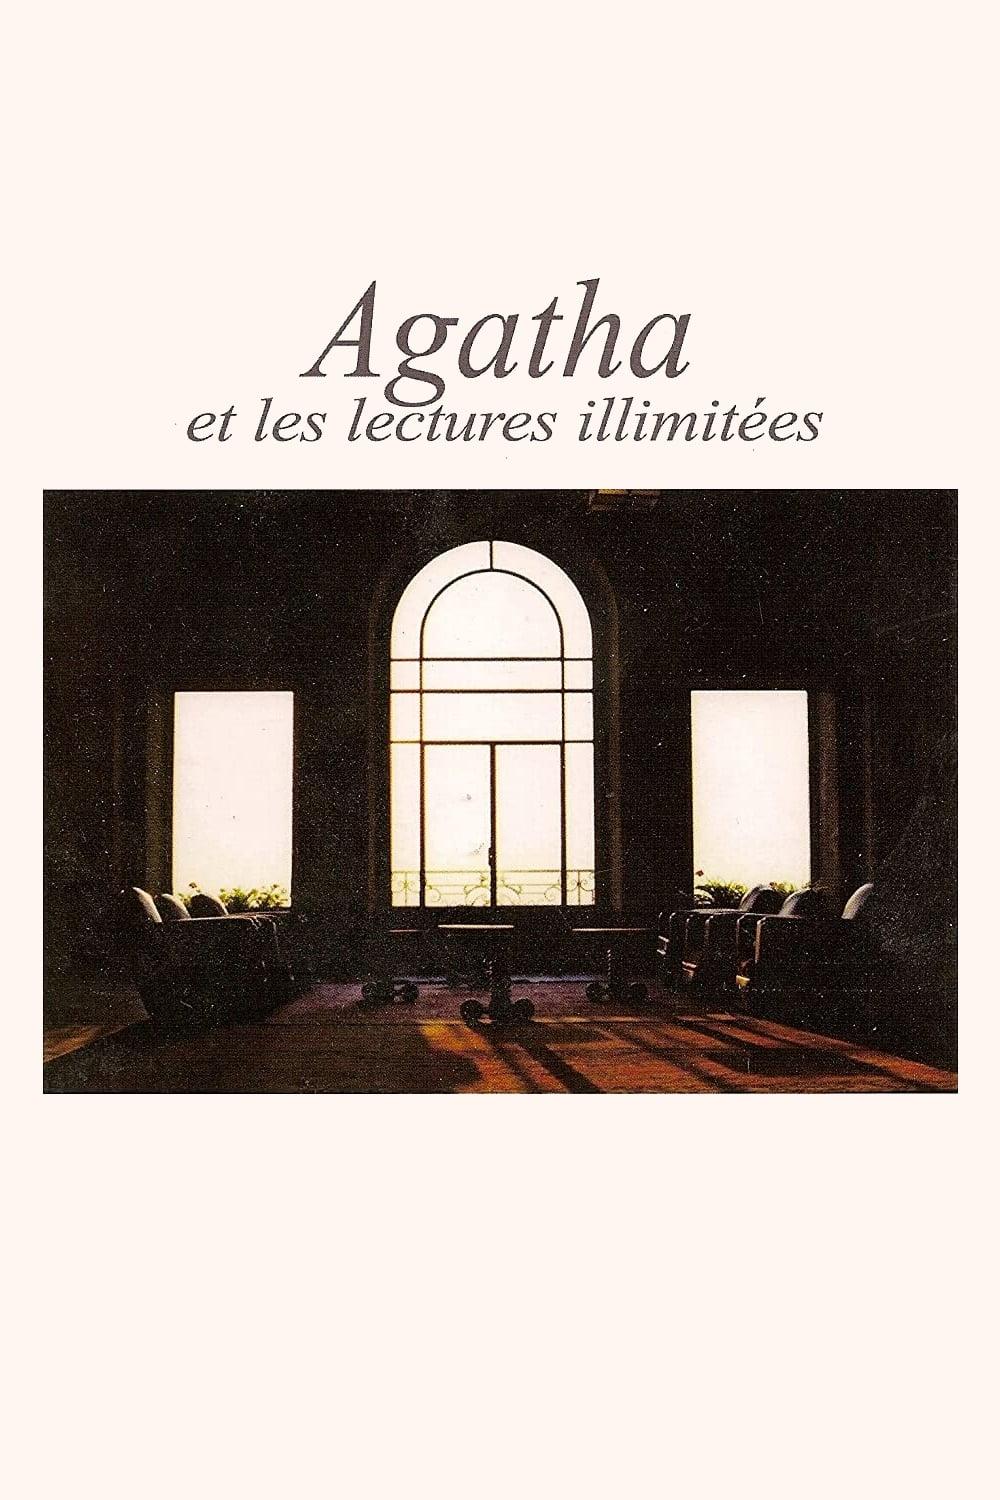 Agatha et les lectures illimitées poster